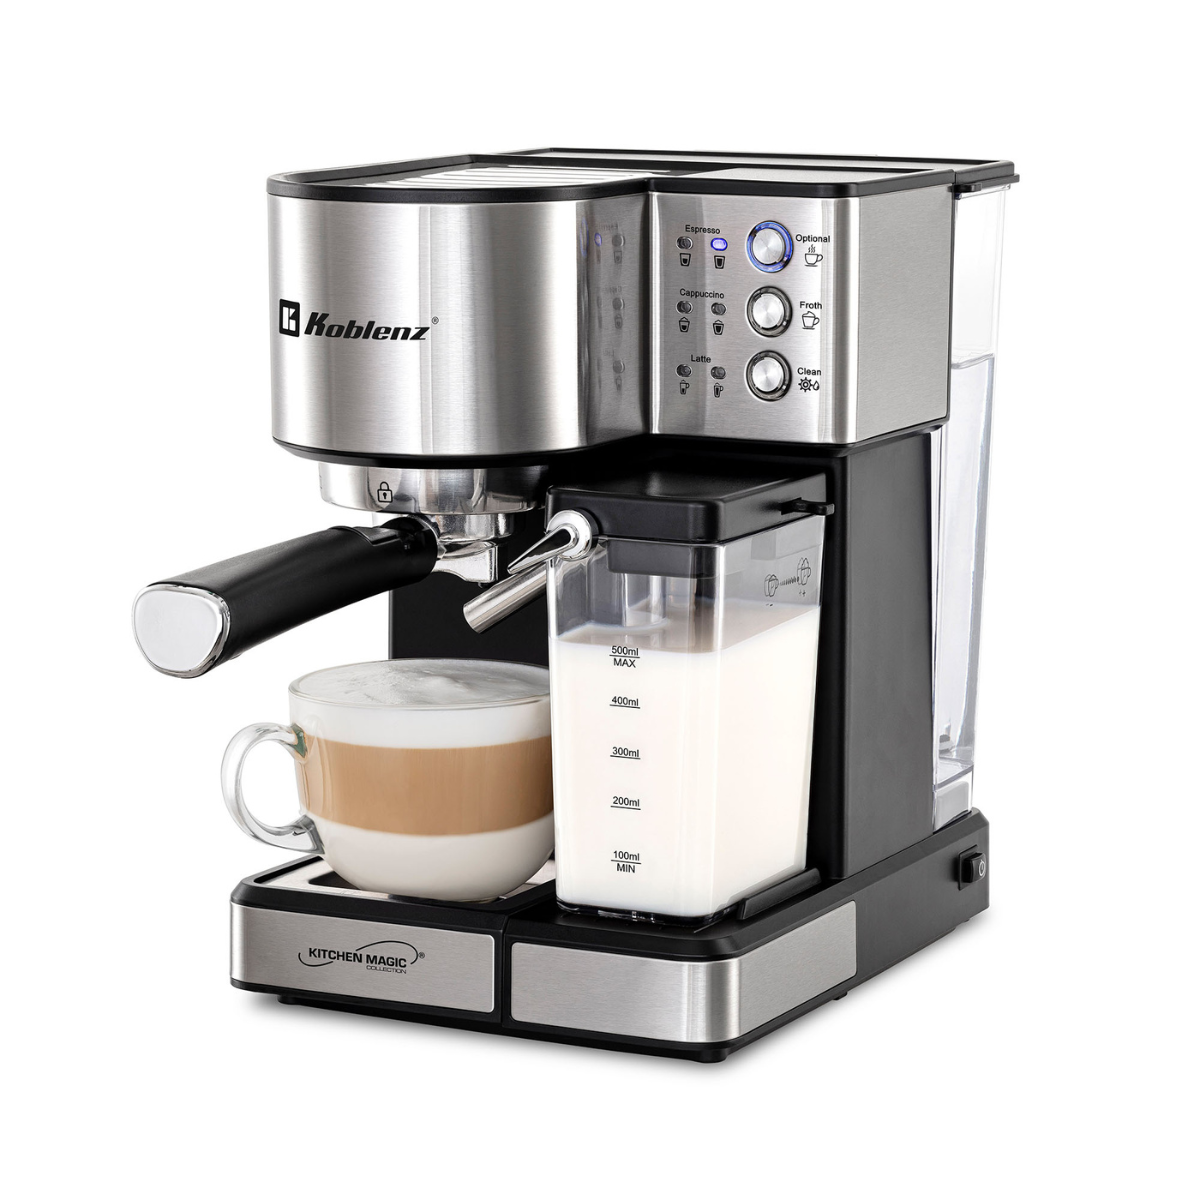 Latte & Espresso Coffee Machine CKM-1350 IN